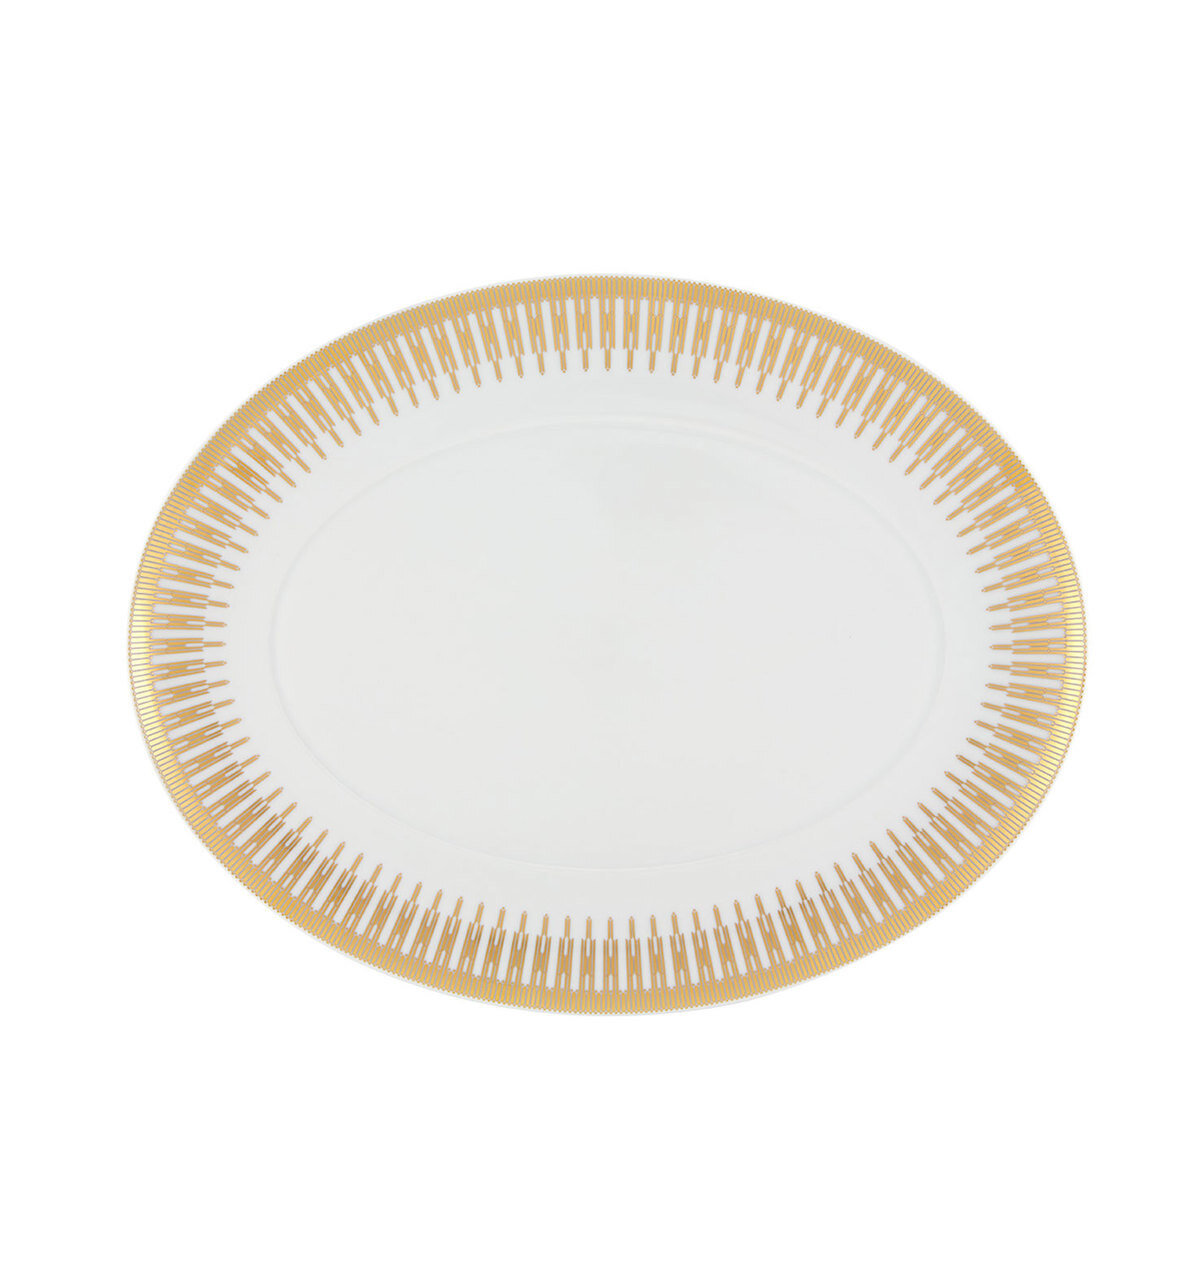 Vista Alegre Gold Exotic Large Oval Platter